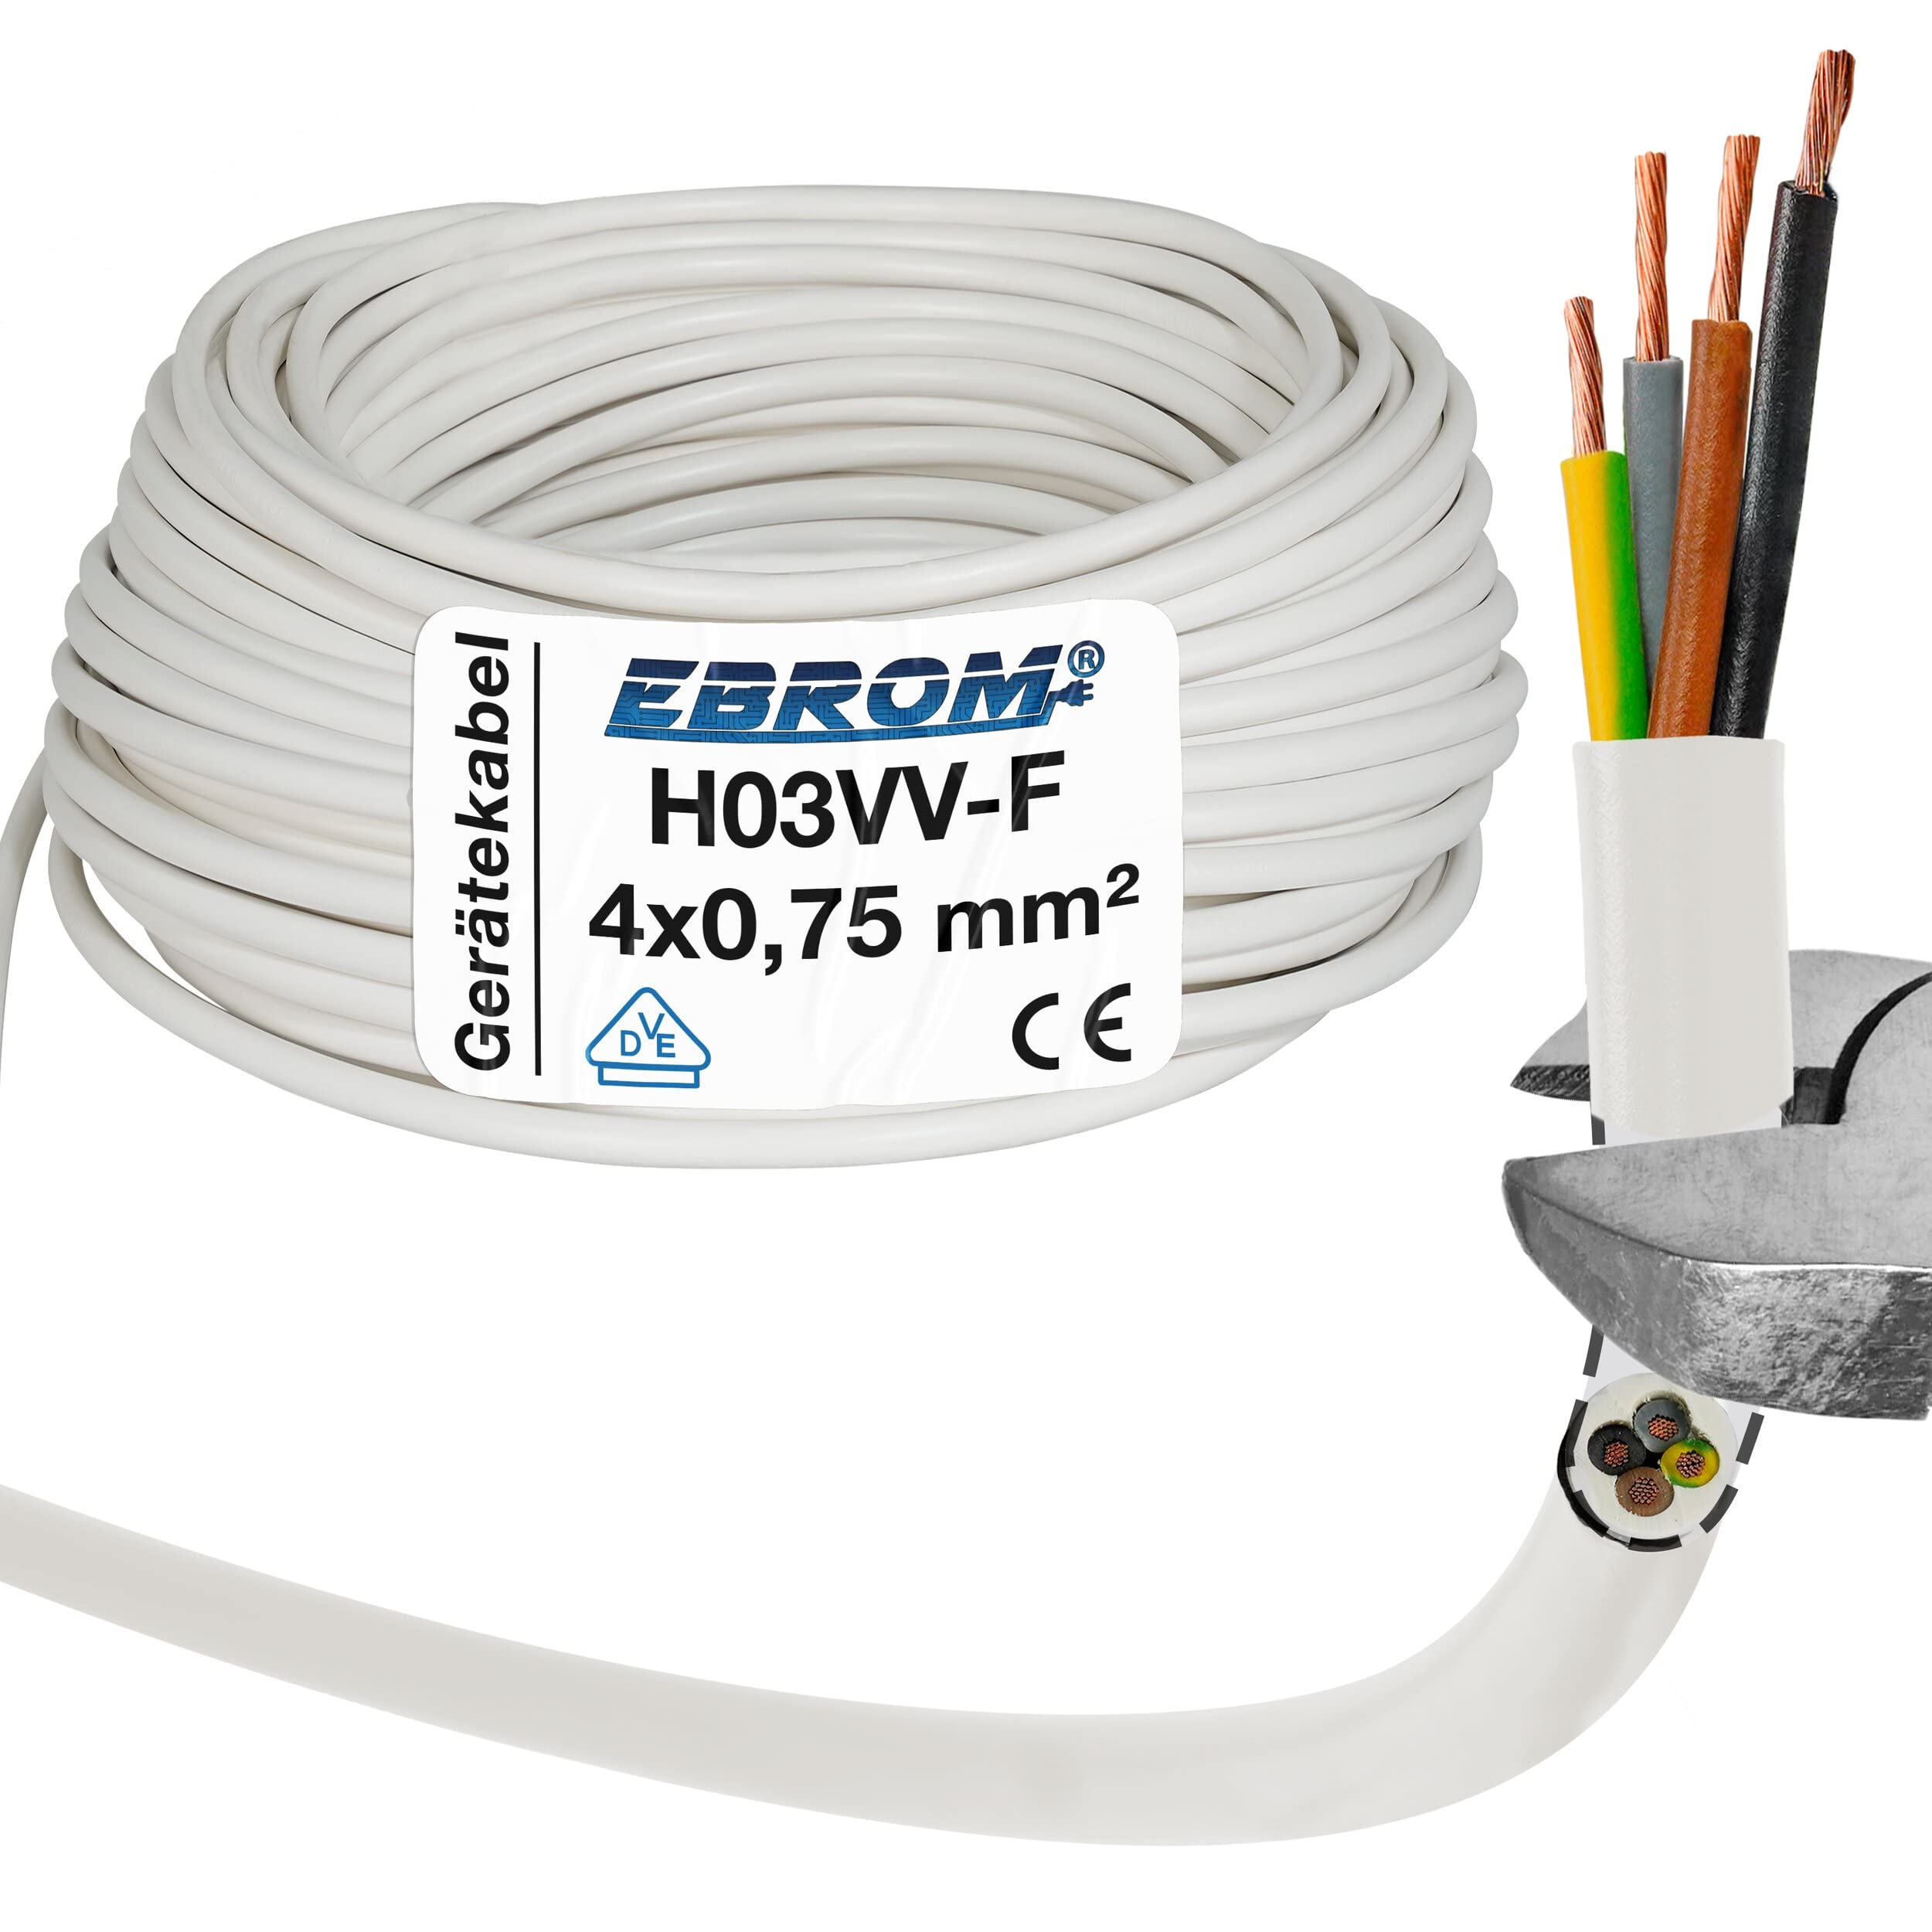 EBROM Kunststoff Schlauchleitung RUND, LED Kabel, Stromkabel, Leitung, Gerätekabel H03VV-F 4x0,75 mm² Farbe: weiß, viele Längen in 5 m Schritten bis 250 Meter 4G0,75 mm2, Ihre Kabellänge: 30 Meter